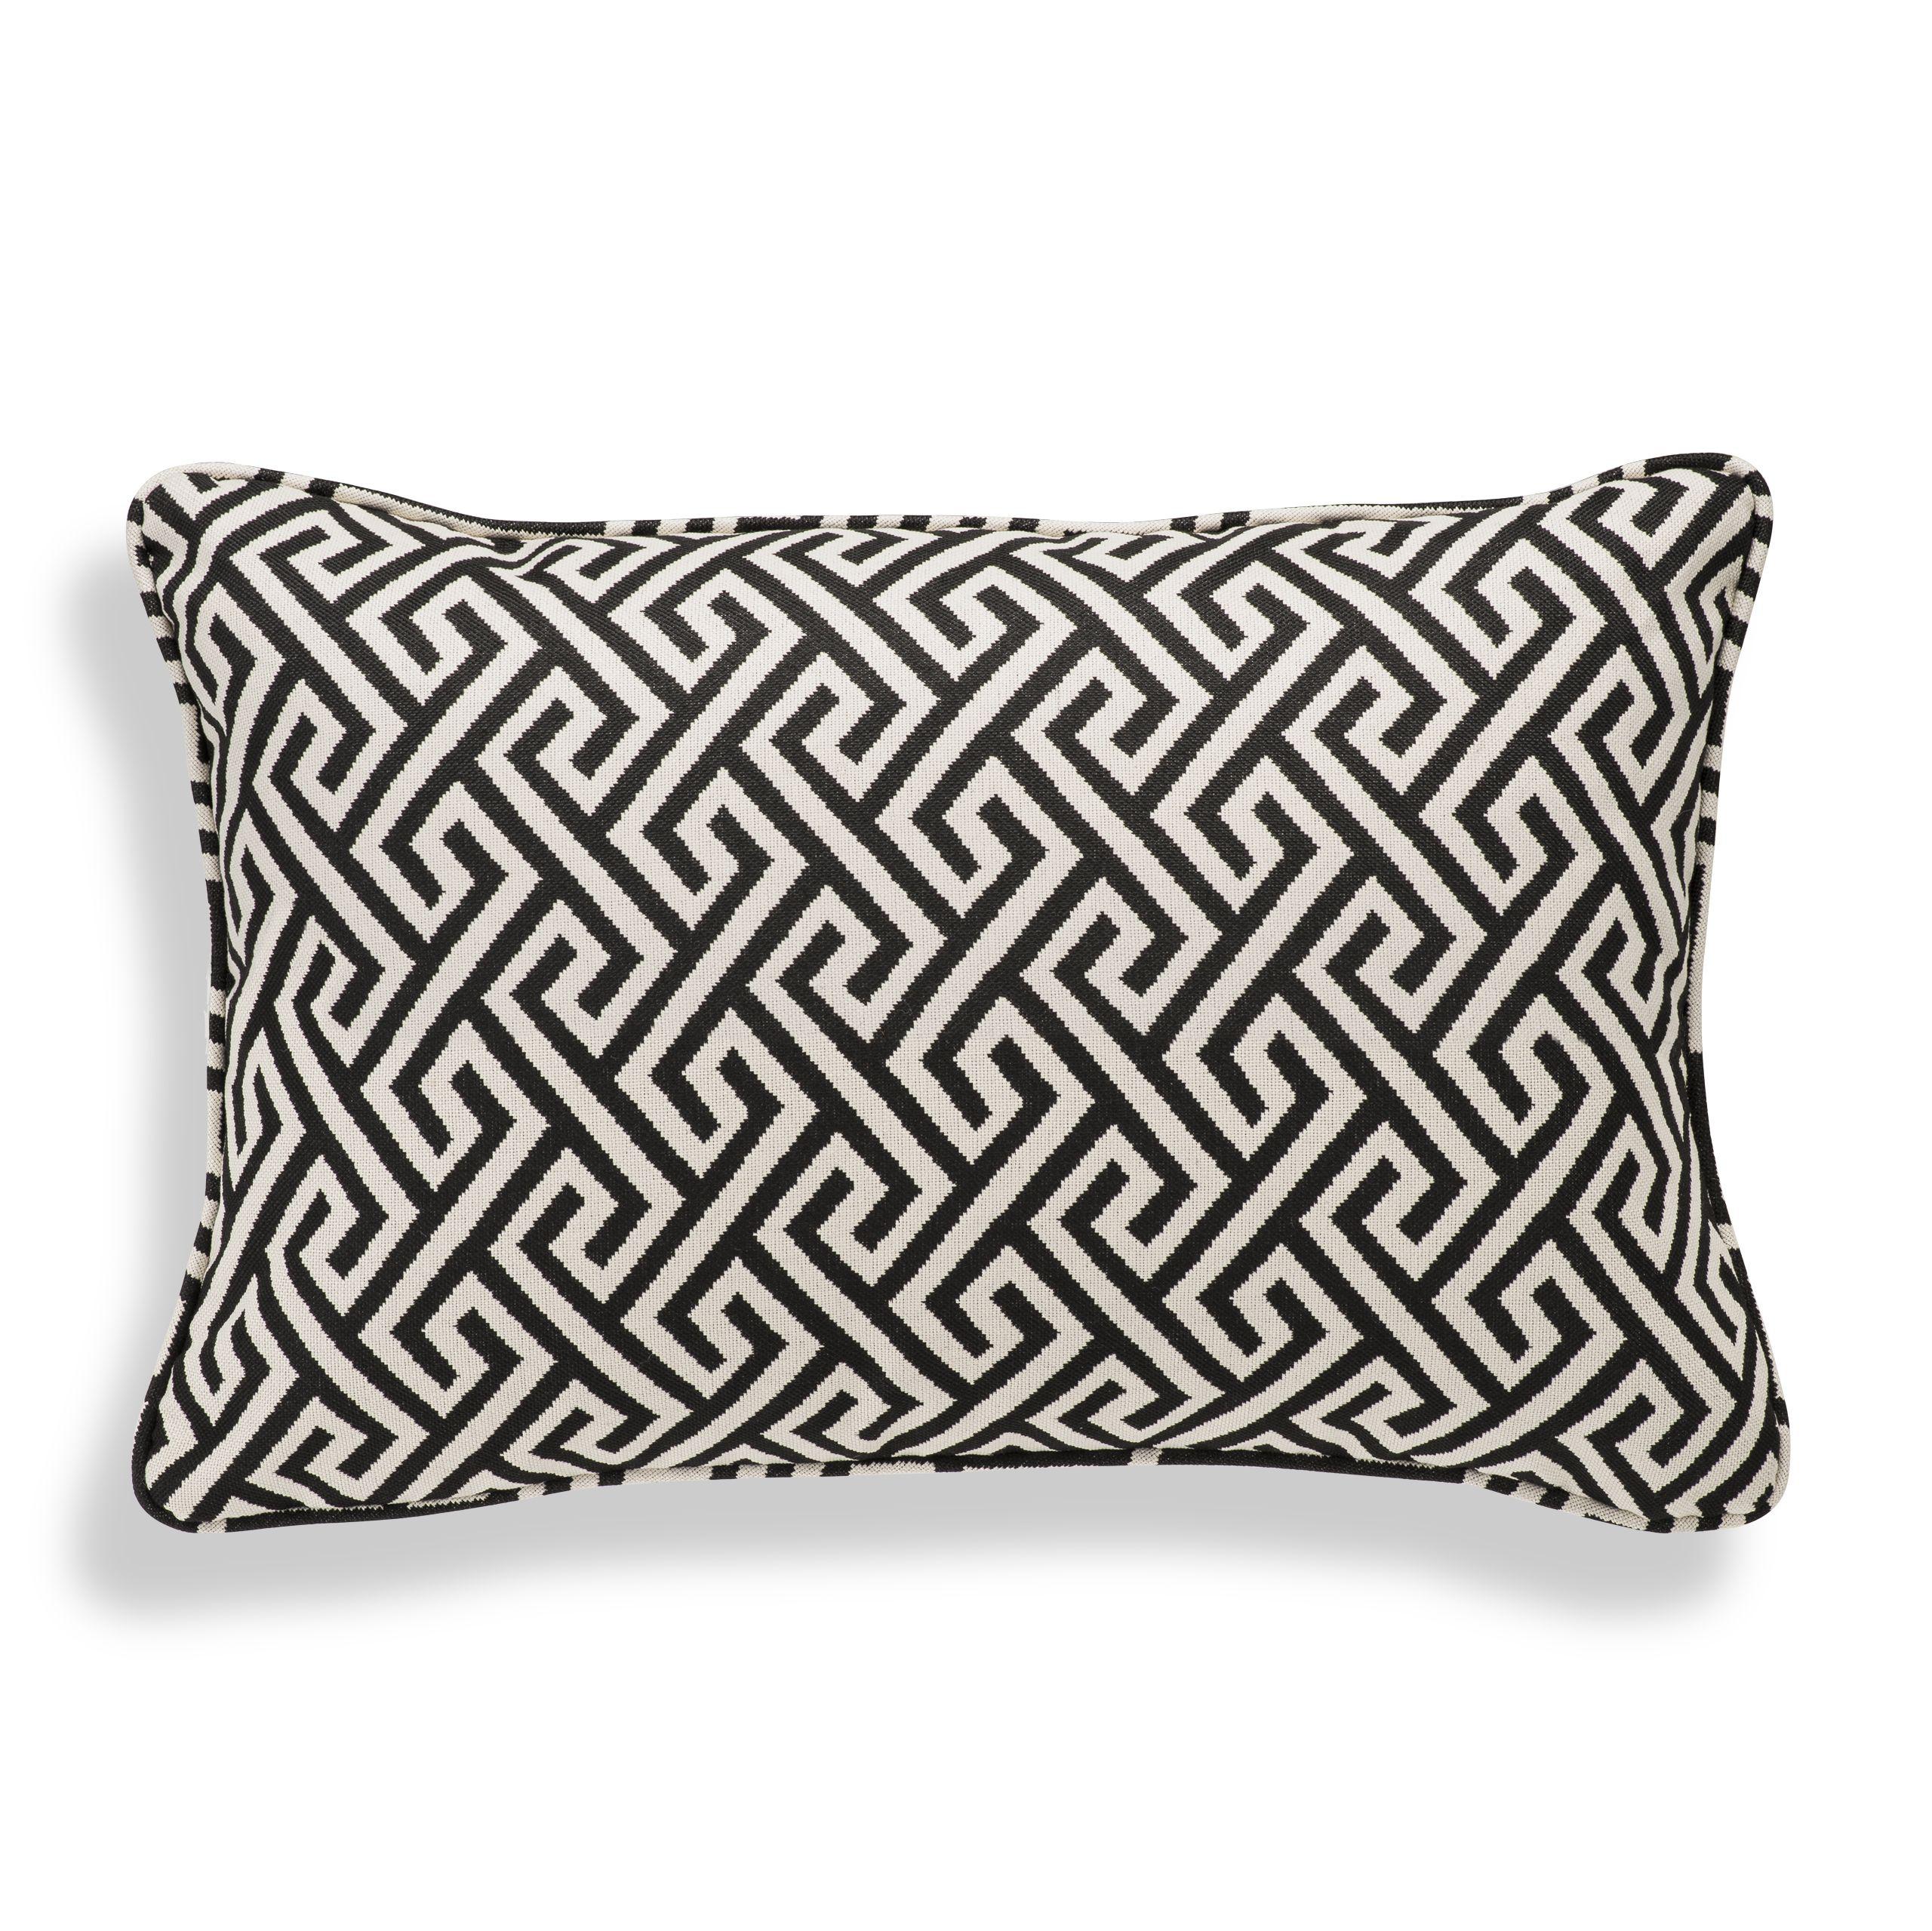 Купить Декоративная подушка Cushion Dudley в интернет-магазине roooms.ru